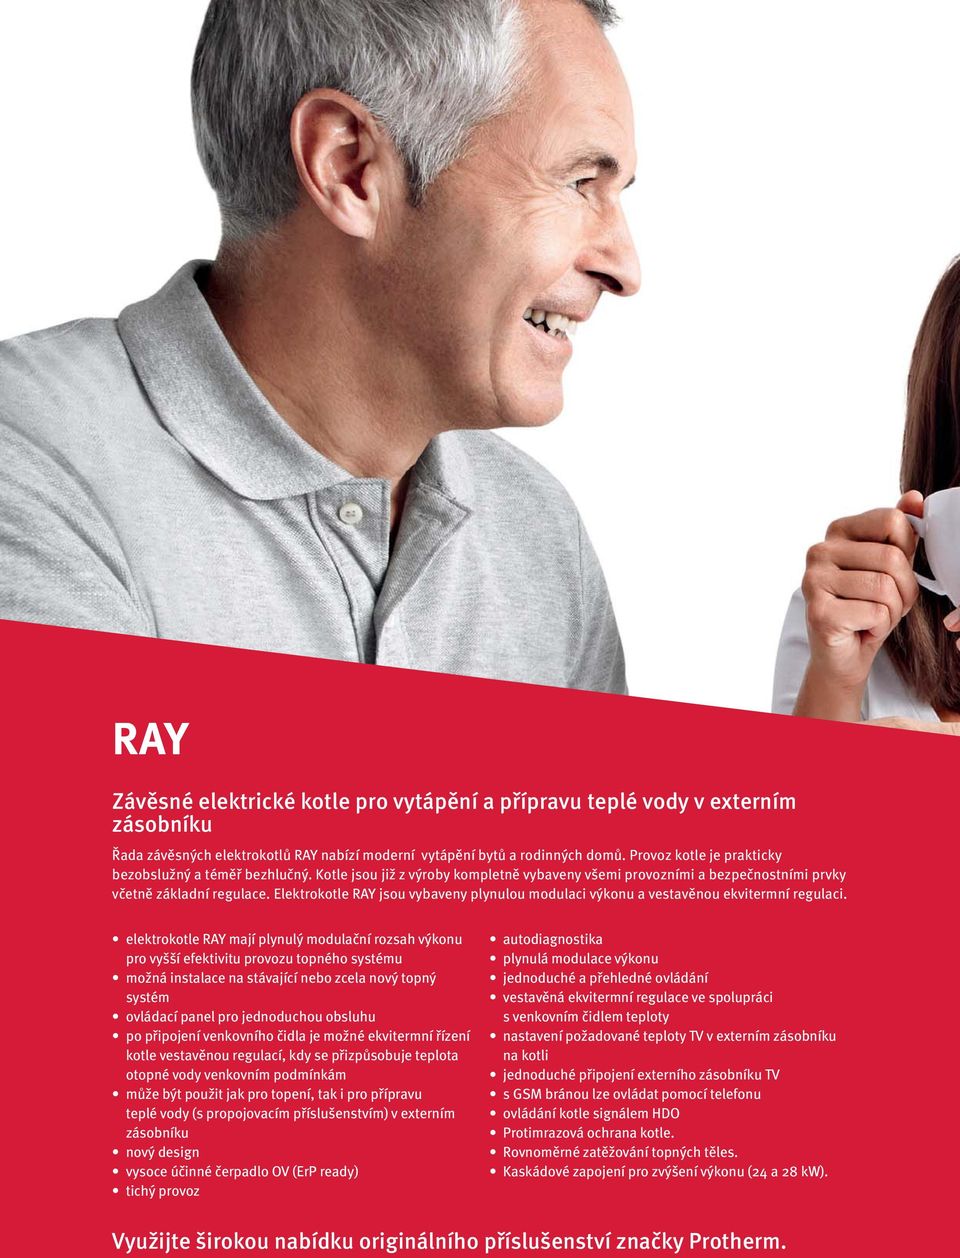 Elektrokotle RAY jsou vybaveny plynulou modulaci výkonu a vestavěnou ekvitermní regulaci.